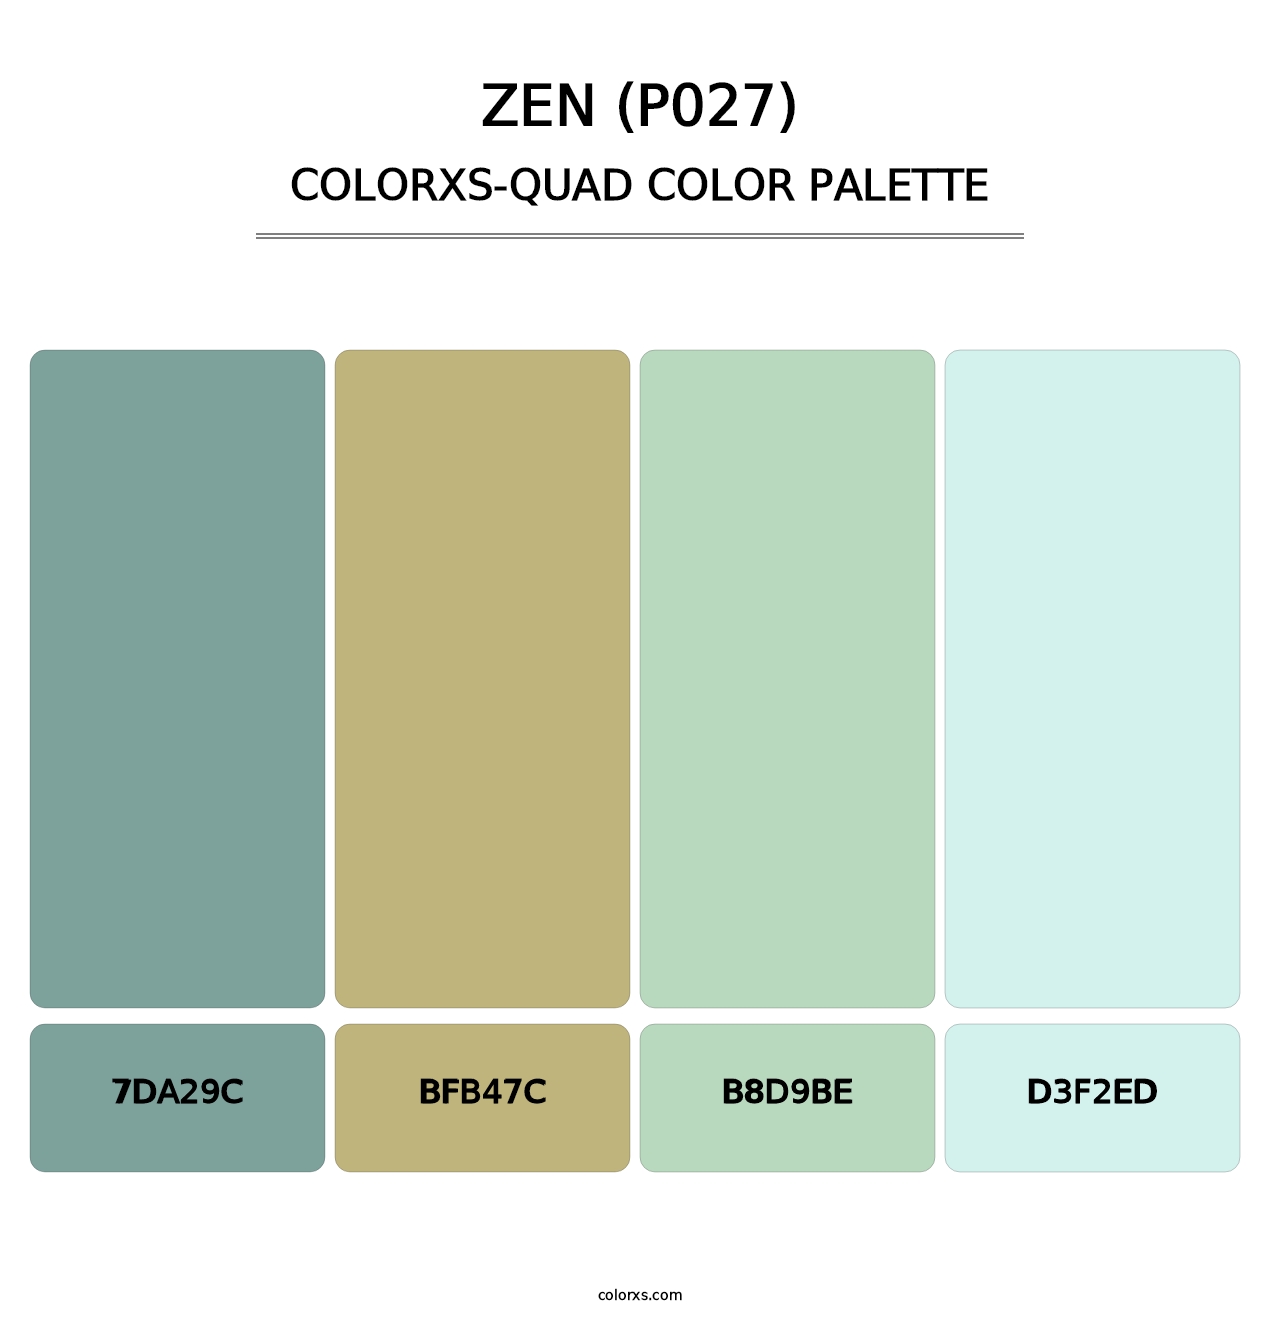 Zen (P027) - Colorxs Quad Palette